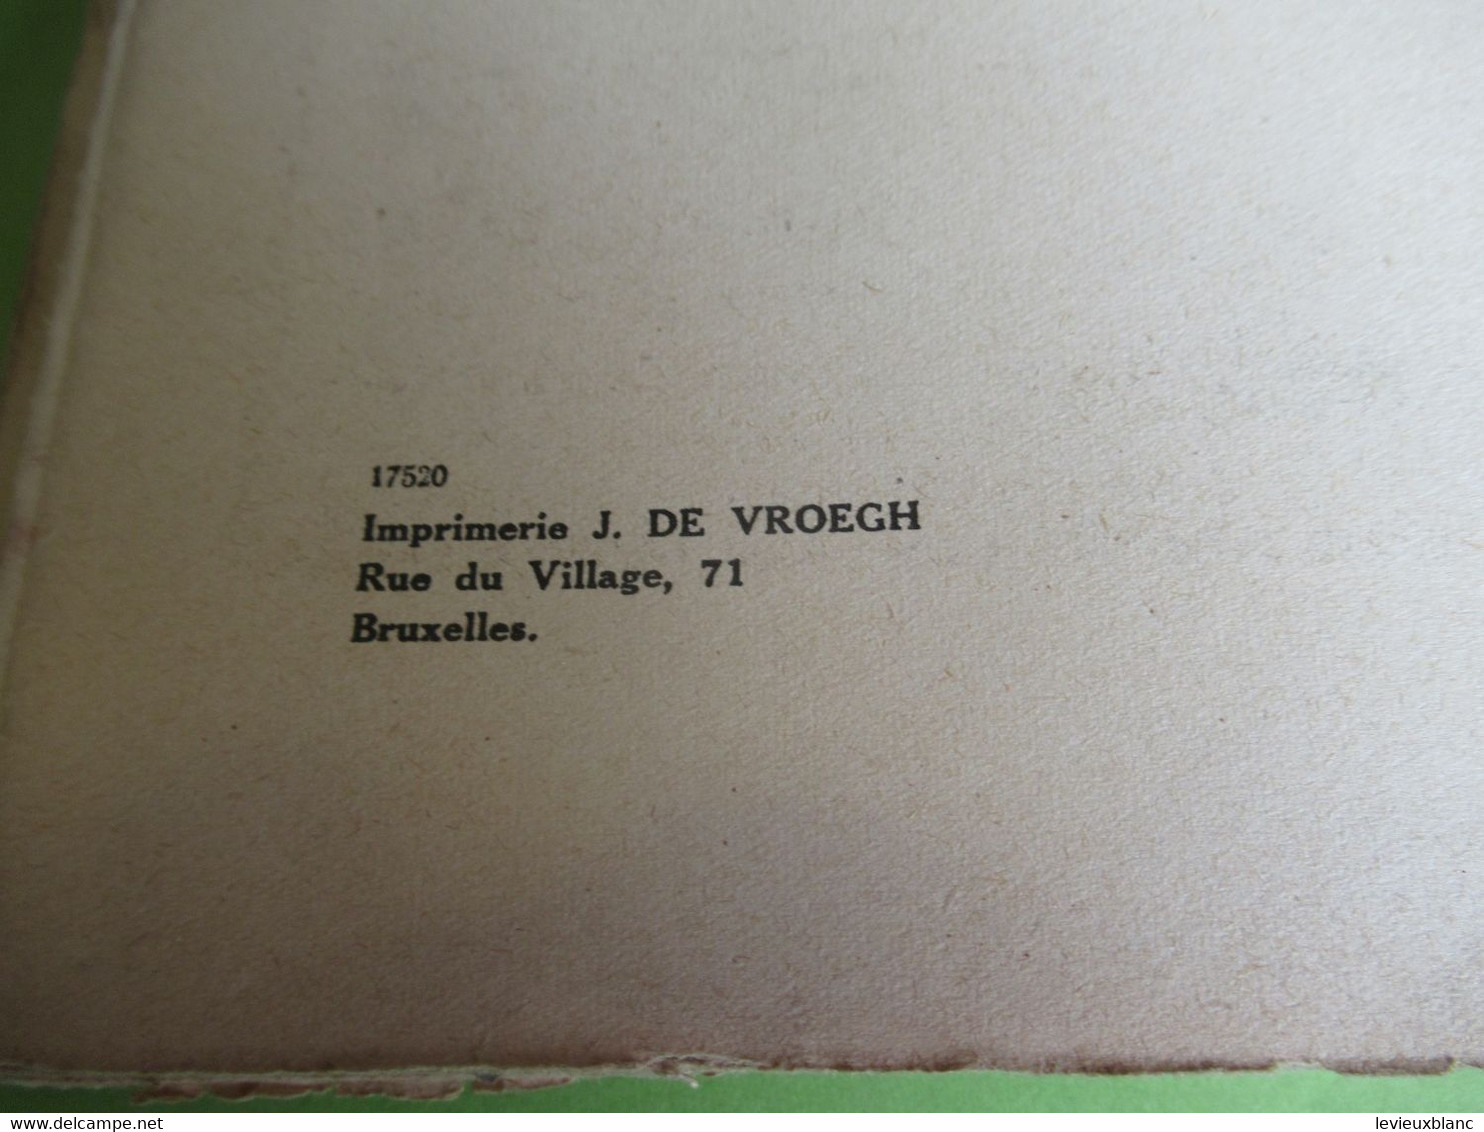 Livre/Les parasites/Blanchart/Ce qu'il faut savoir des perturbations radiophoniques/Union Radio-Club Belgique1935 VPN357